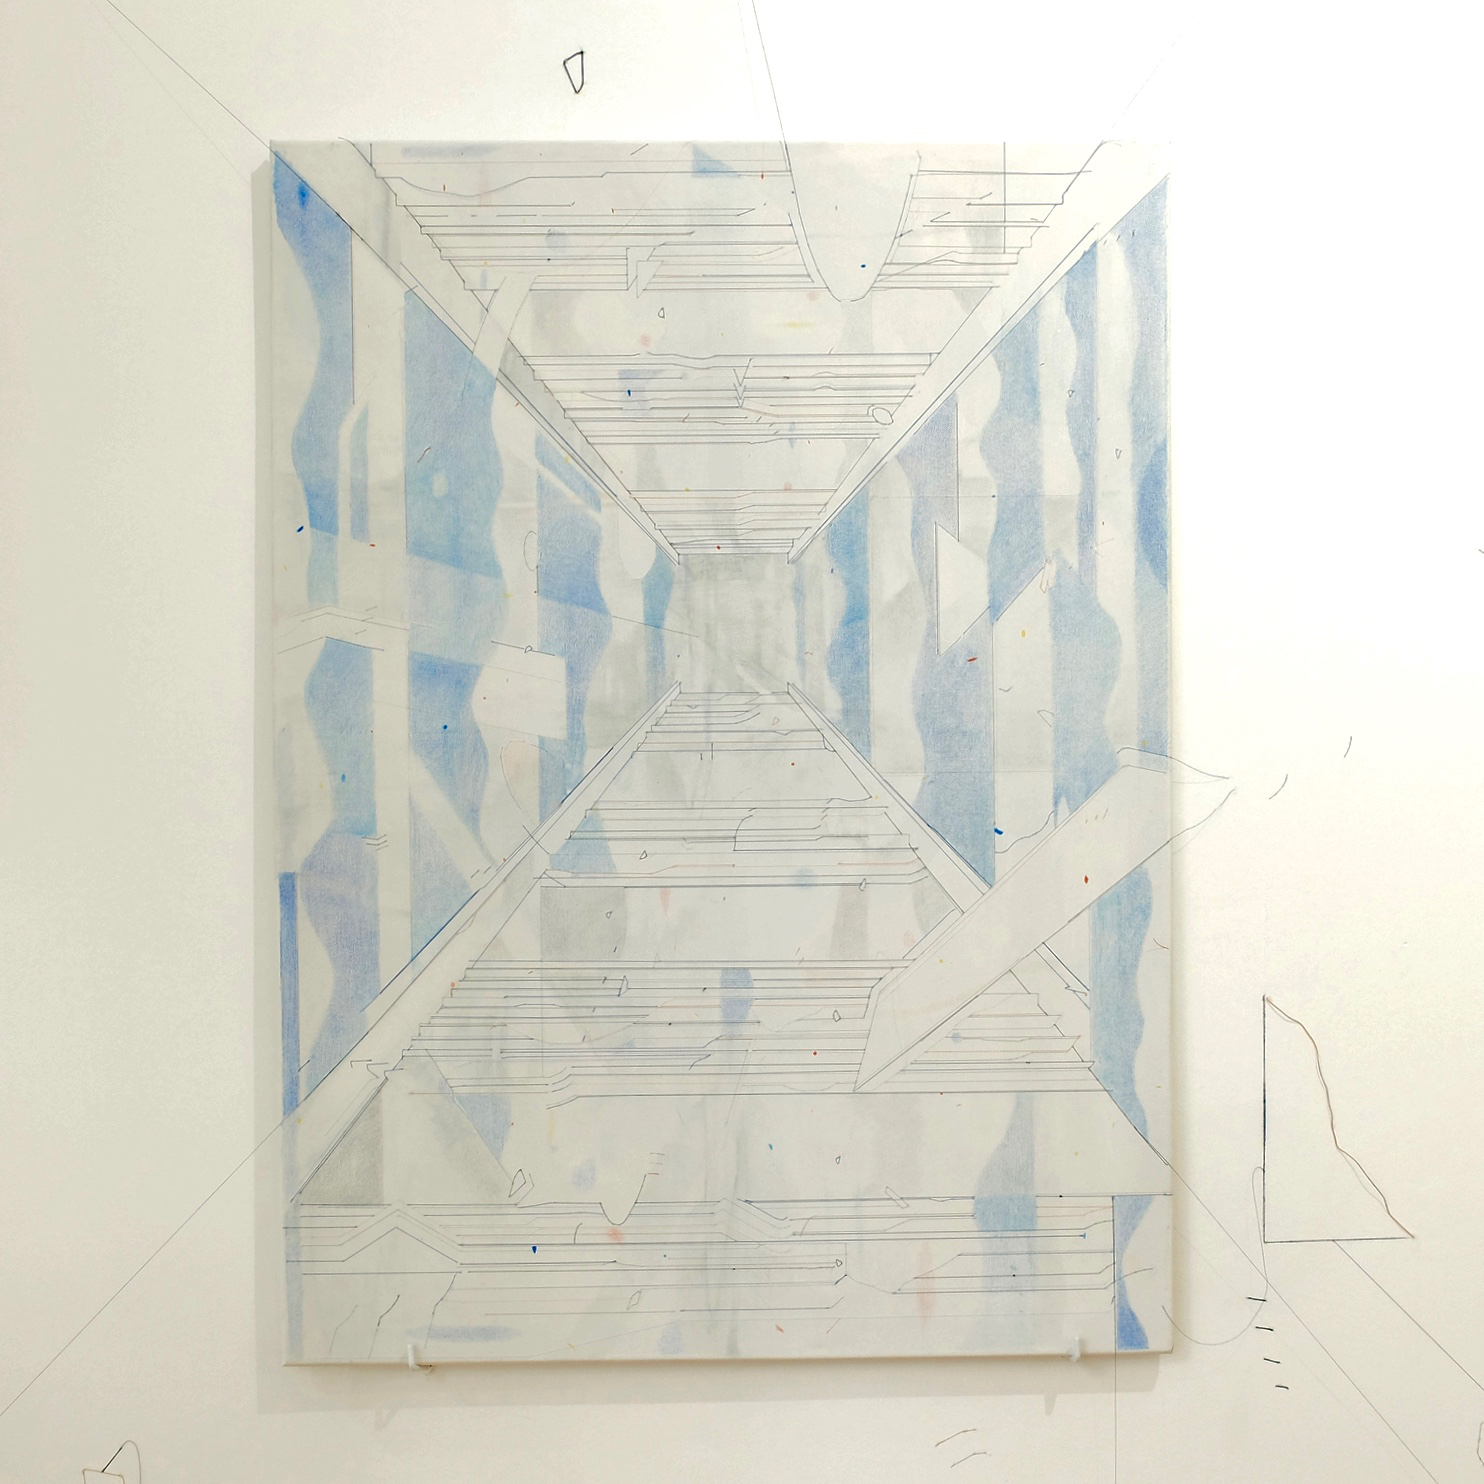   Keita Mori,  Bug Report (Potemkim stairs) , 2016. Fil de coton et fil de soie, acrylique, Caran d’Ache sur toile, 100 cm x 70 cm   